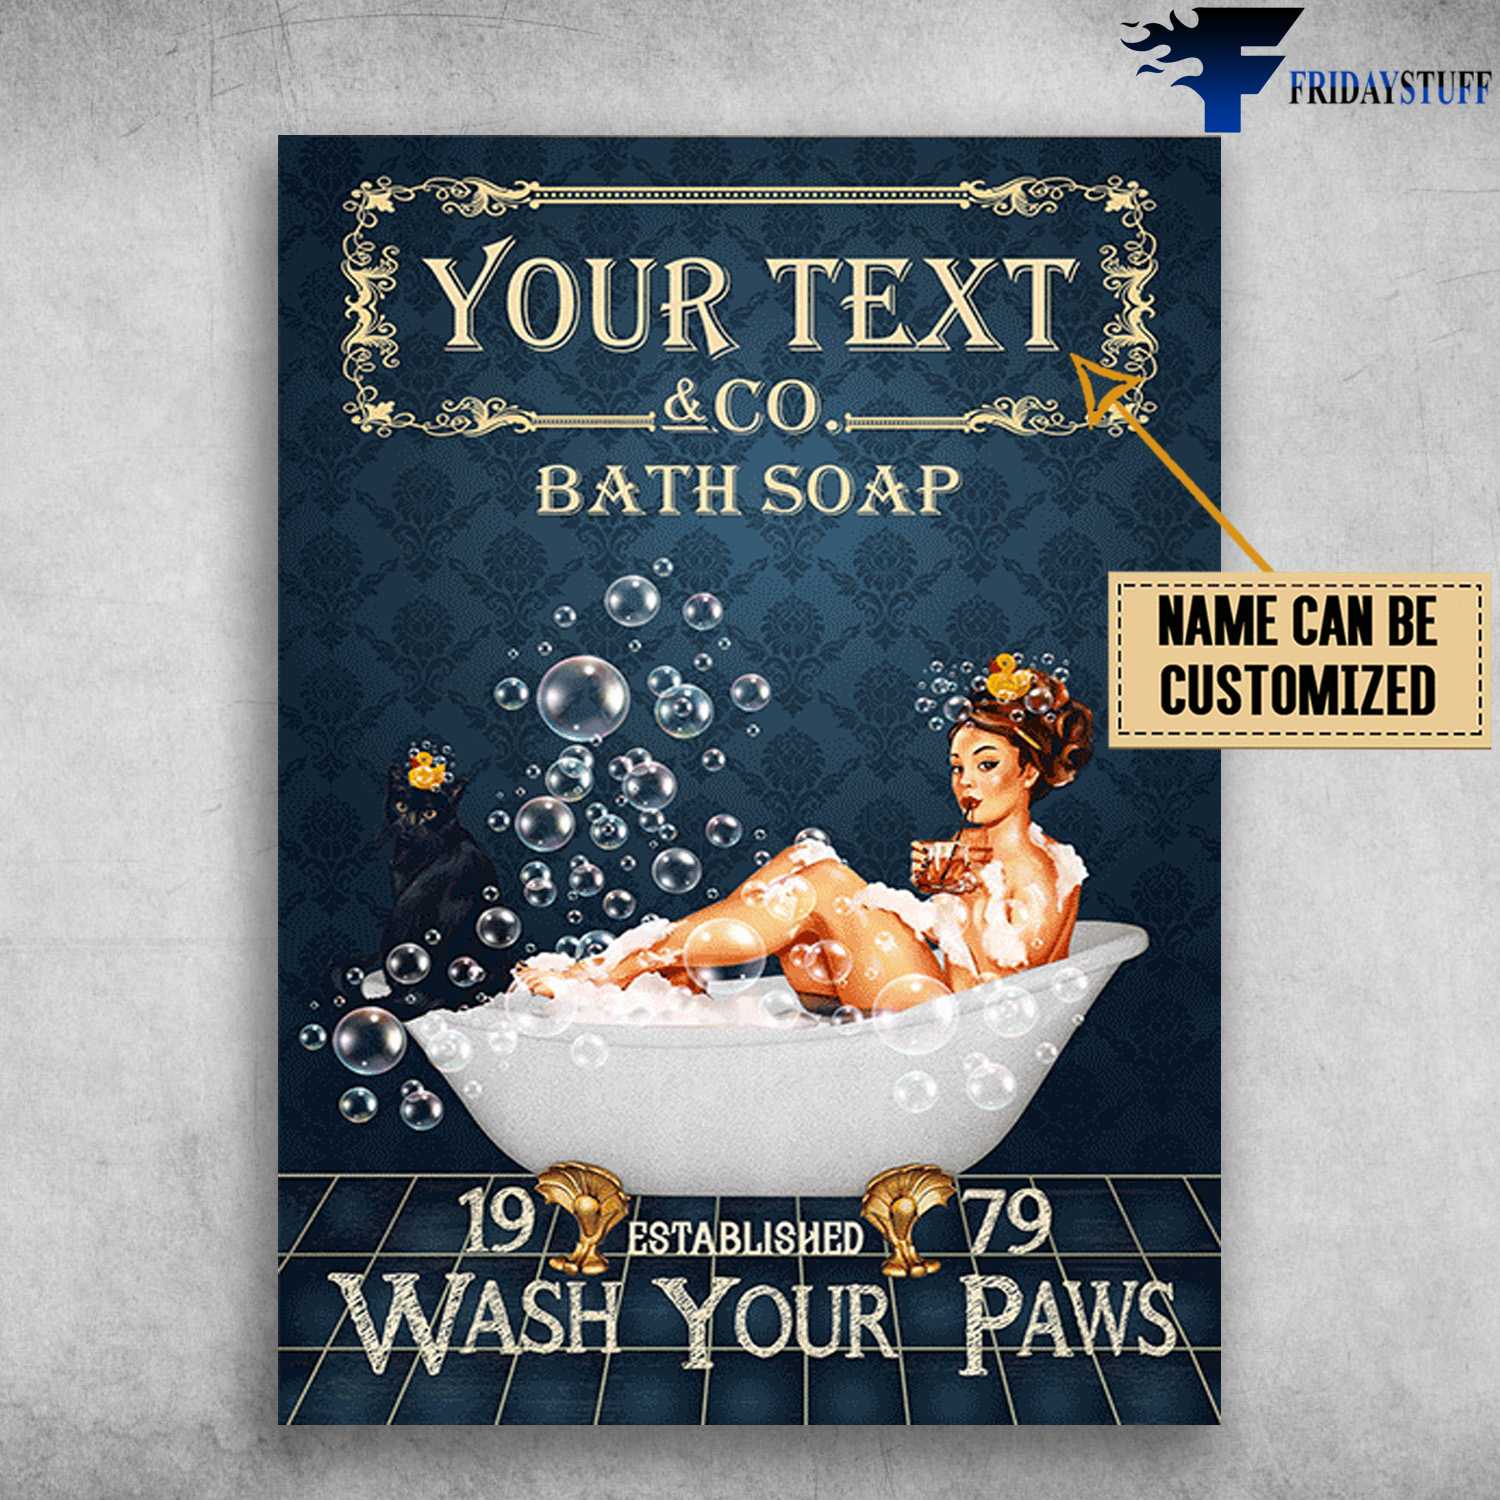 Bath Soap, Girl In Bath - 19 Established 79, Wash Your Paws